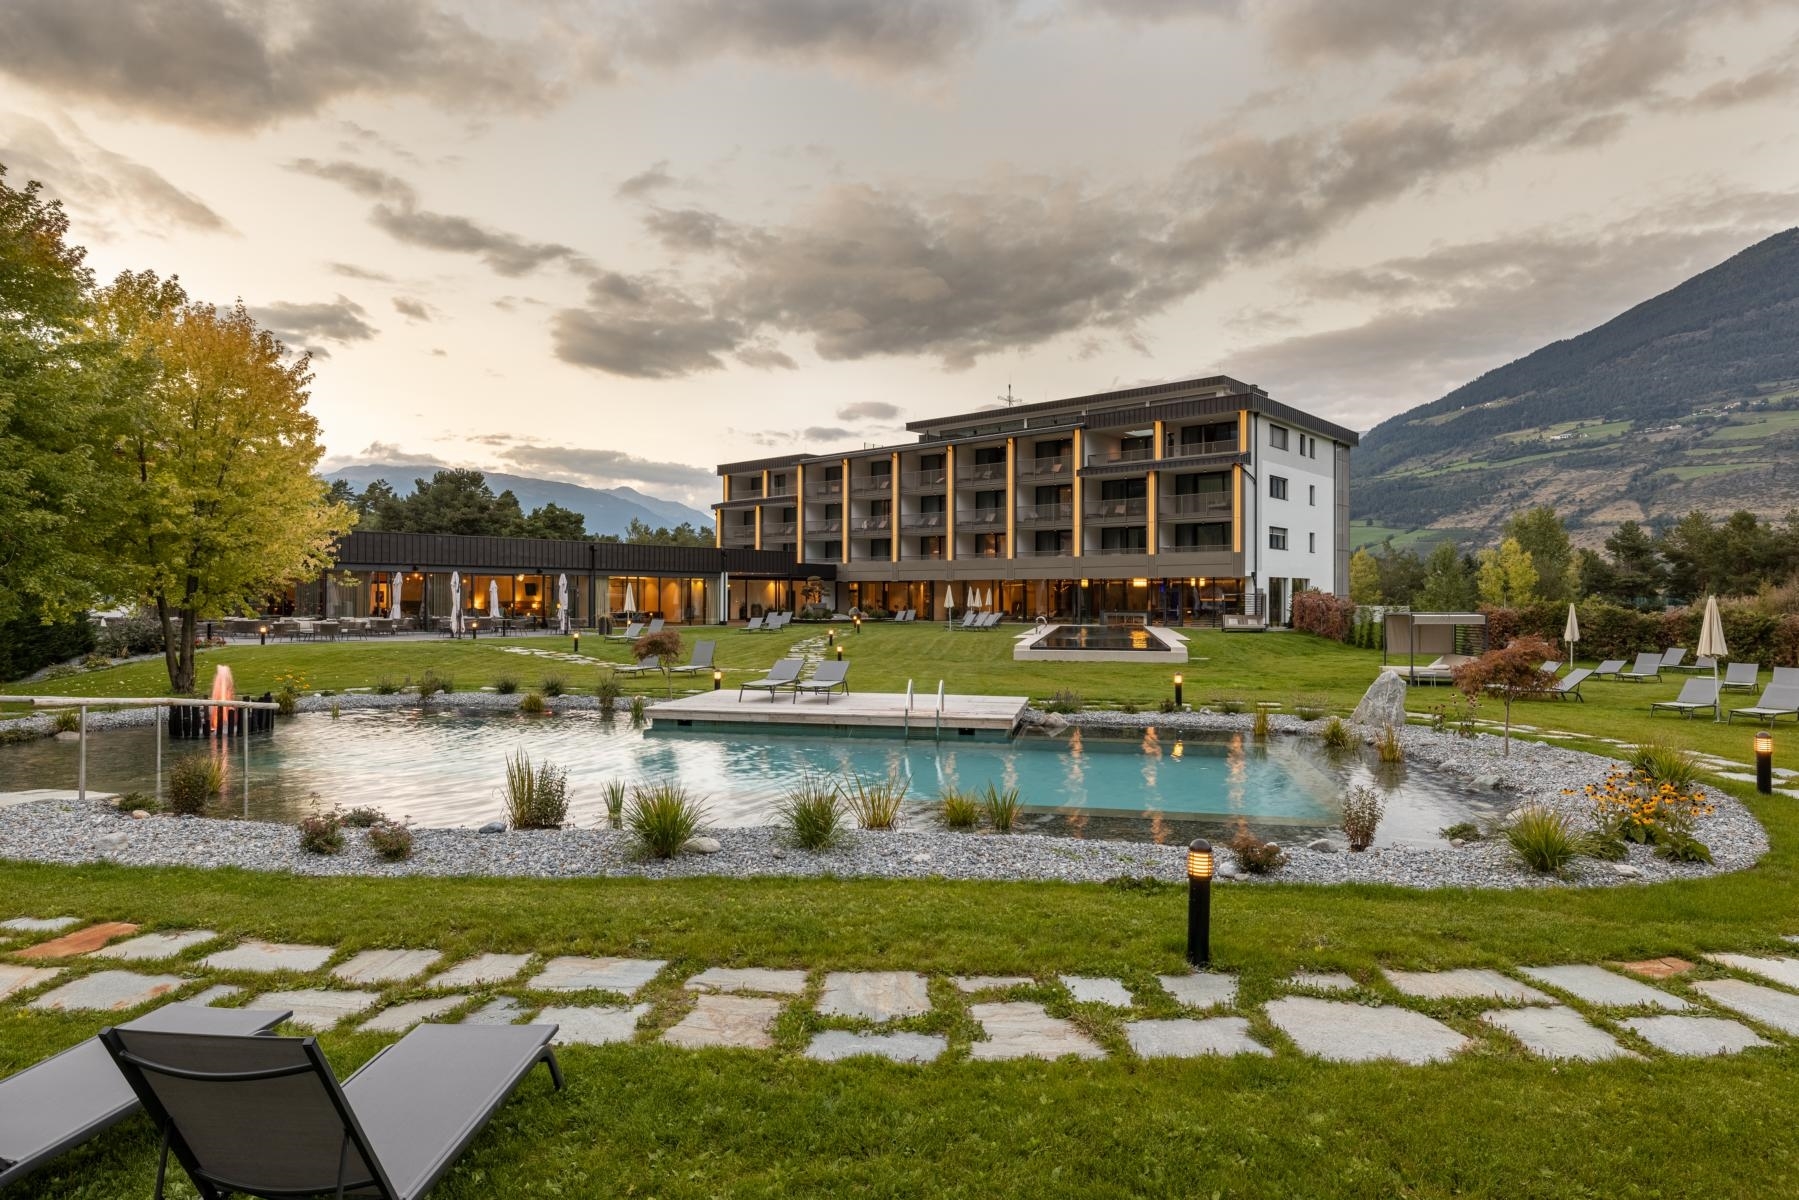 Garden Park Hotel - Prato allo Stelvio in Val Venosta